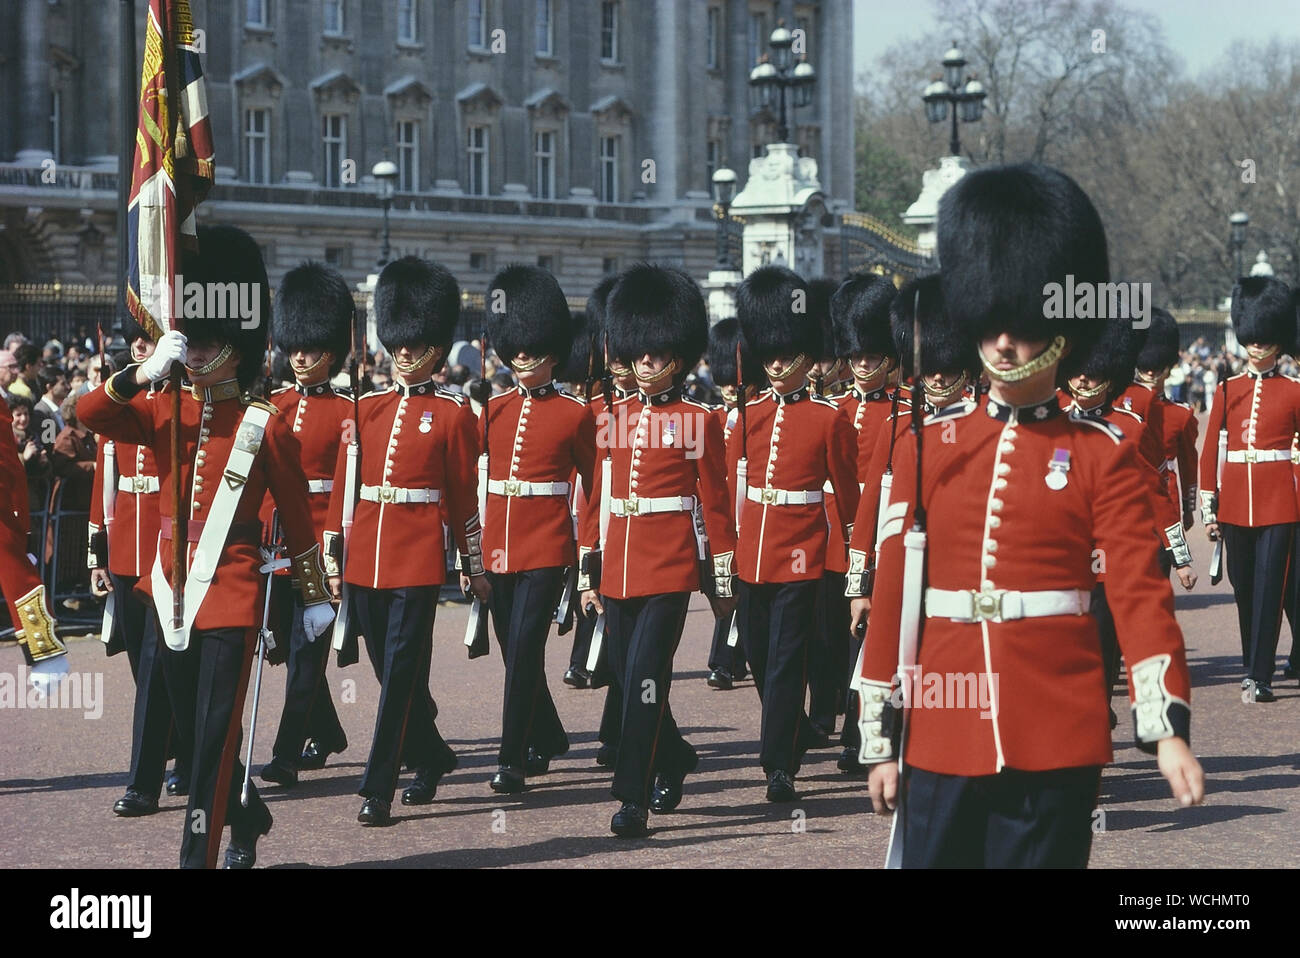 Les protections de flux de refroidissement. Relève de la garde à Buckingham Palace, Londres, Angleterre, Royaume-Uni. Vers les années 1980 Banque D'Images